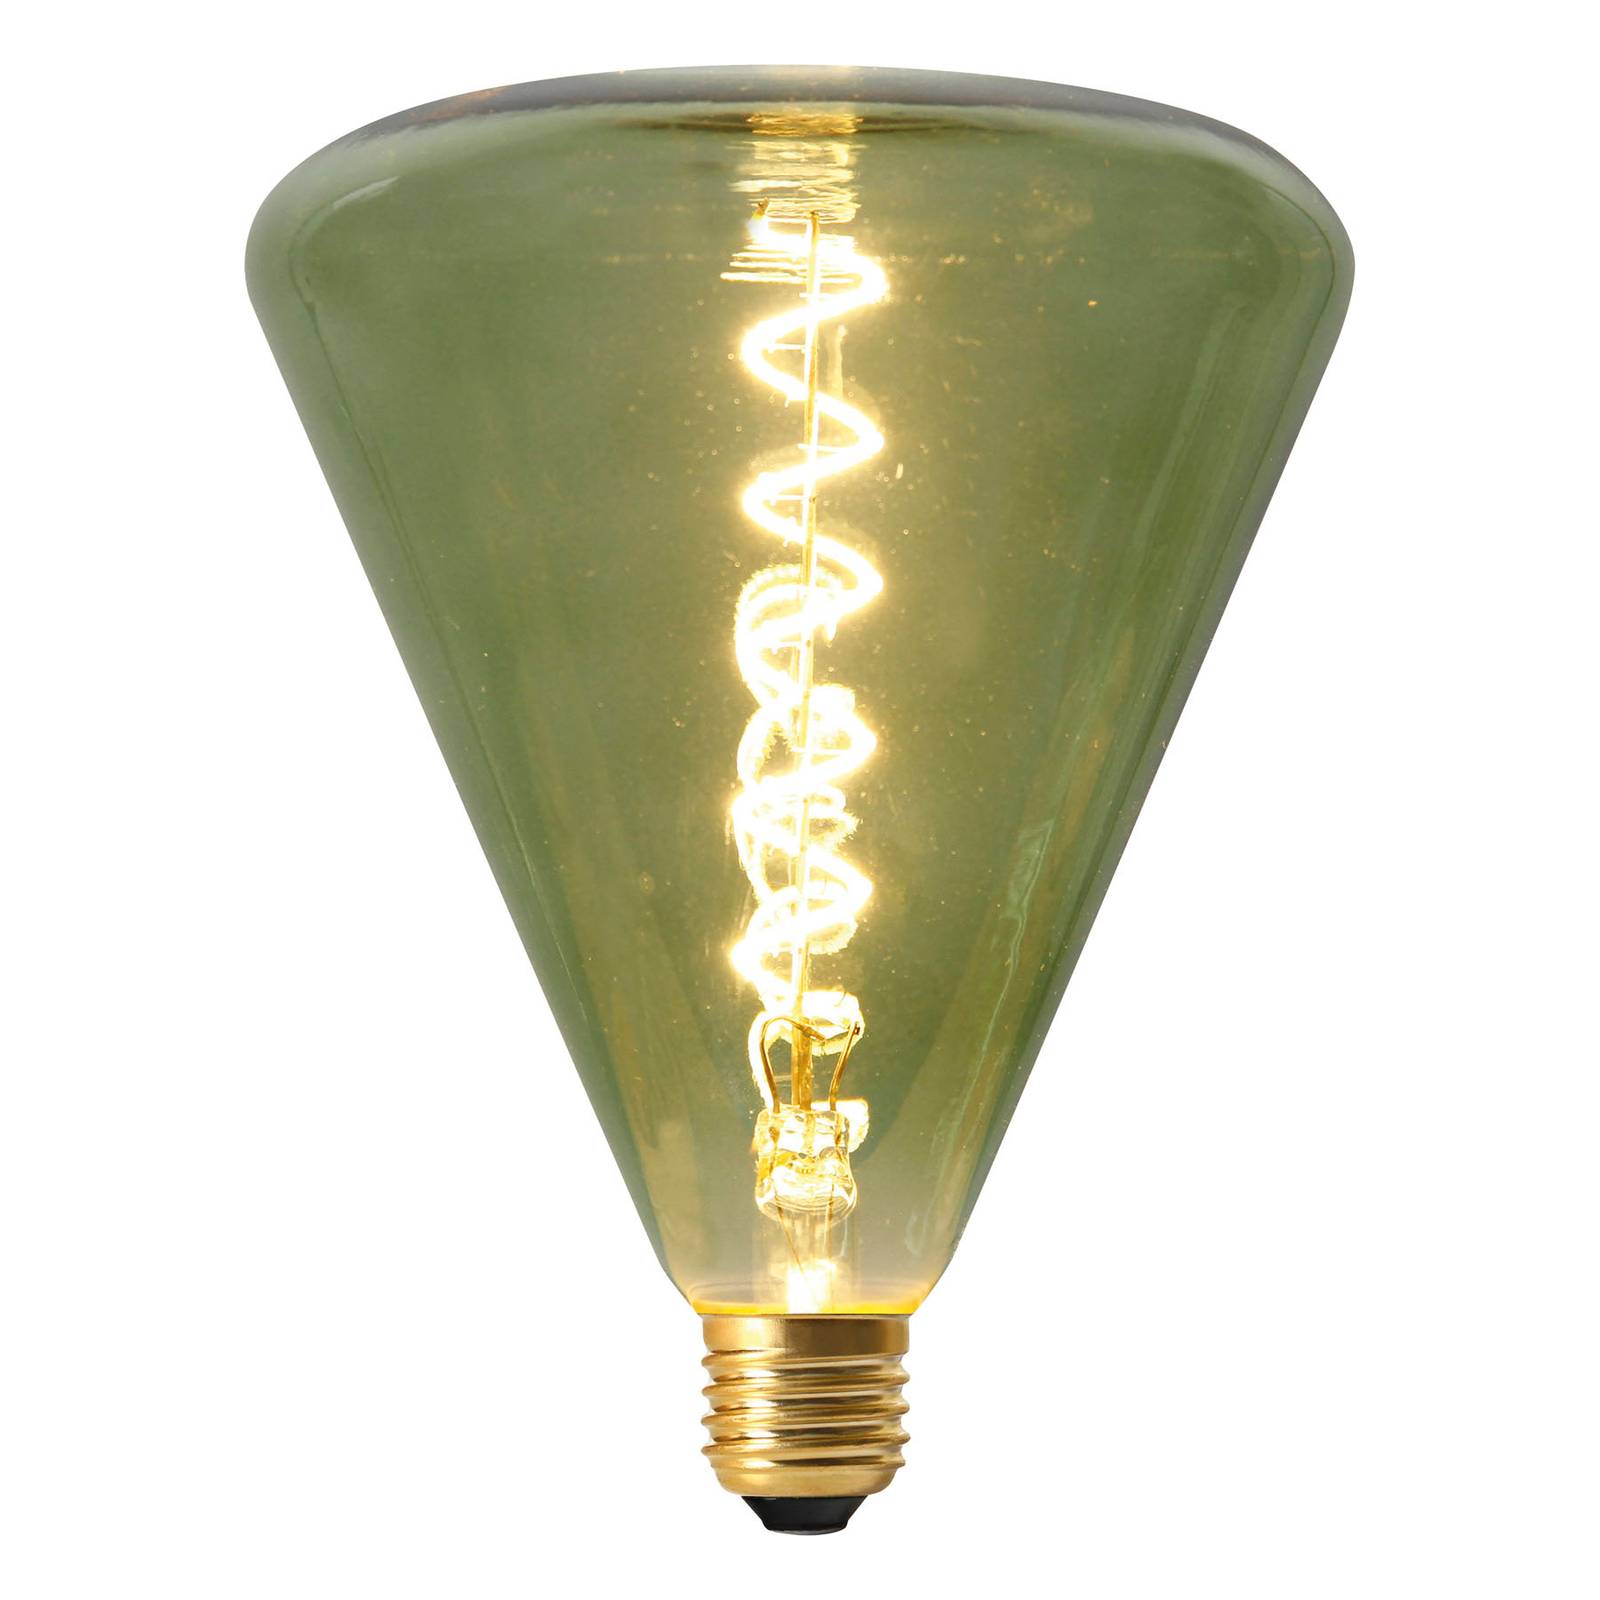 Naeve Leuchten LED-Lampe Dilly E27 4W 2200K dimmbar, grün getönt